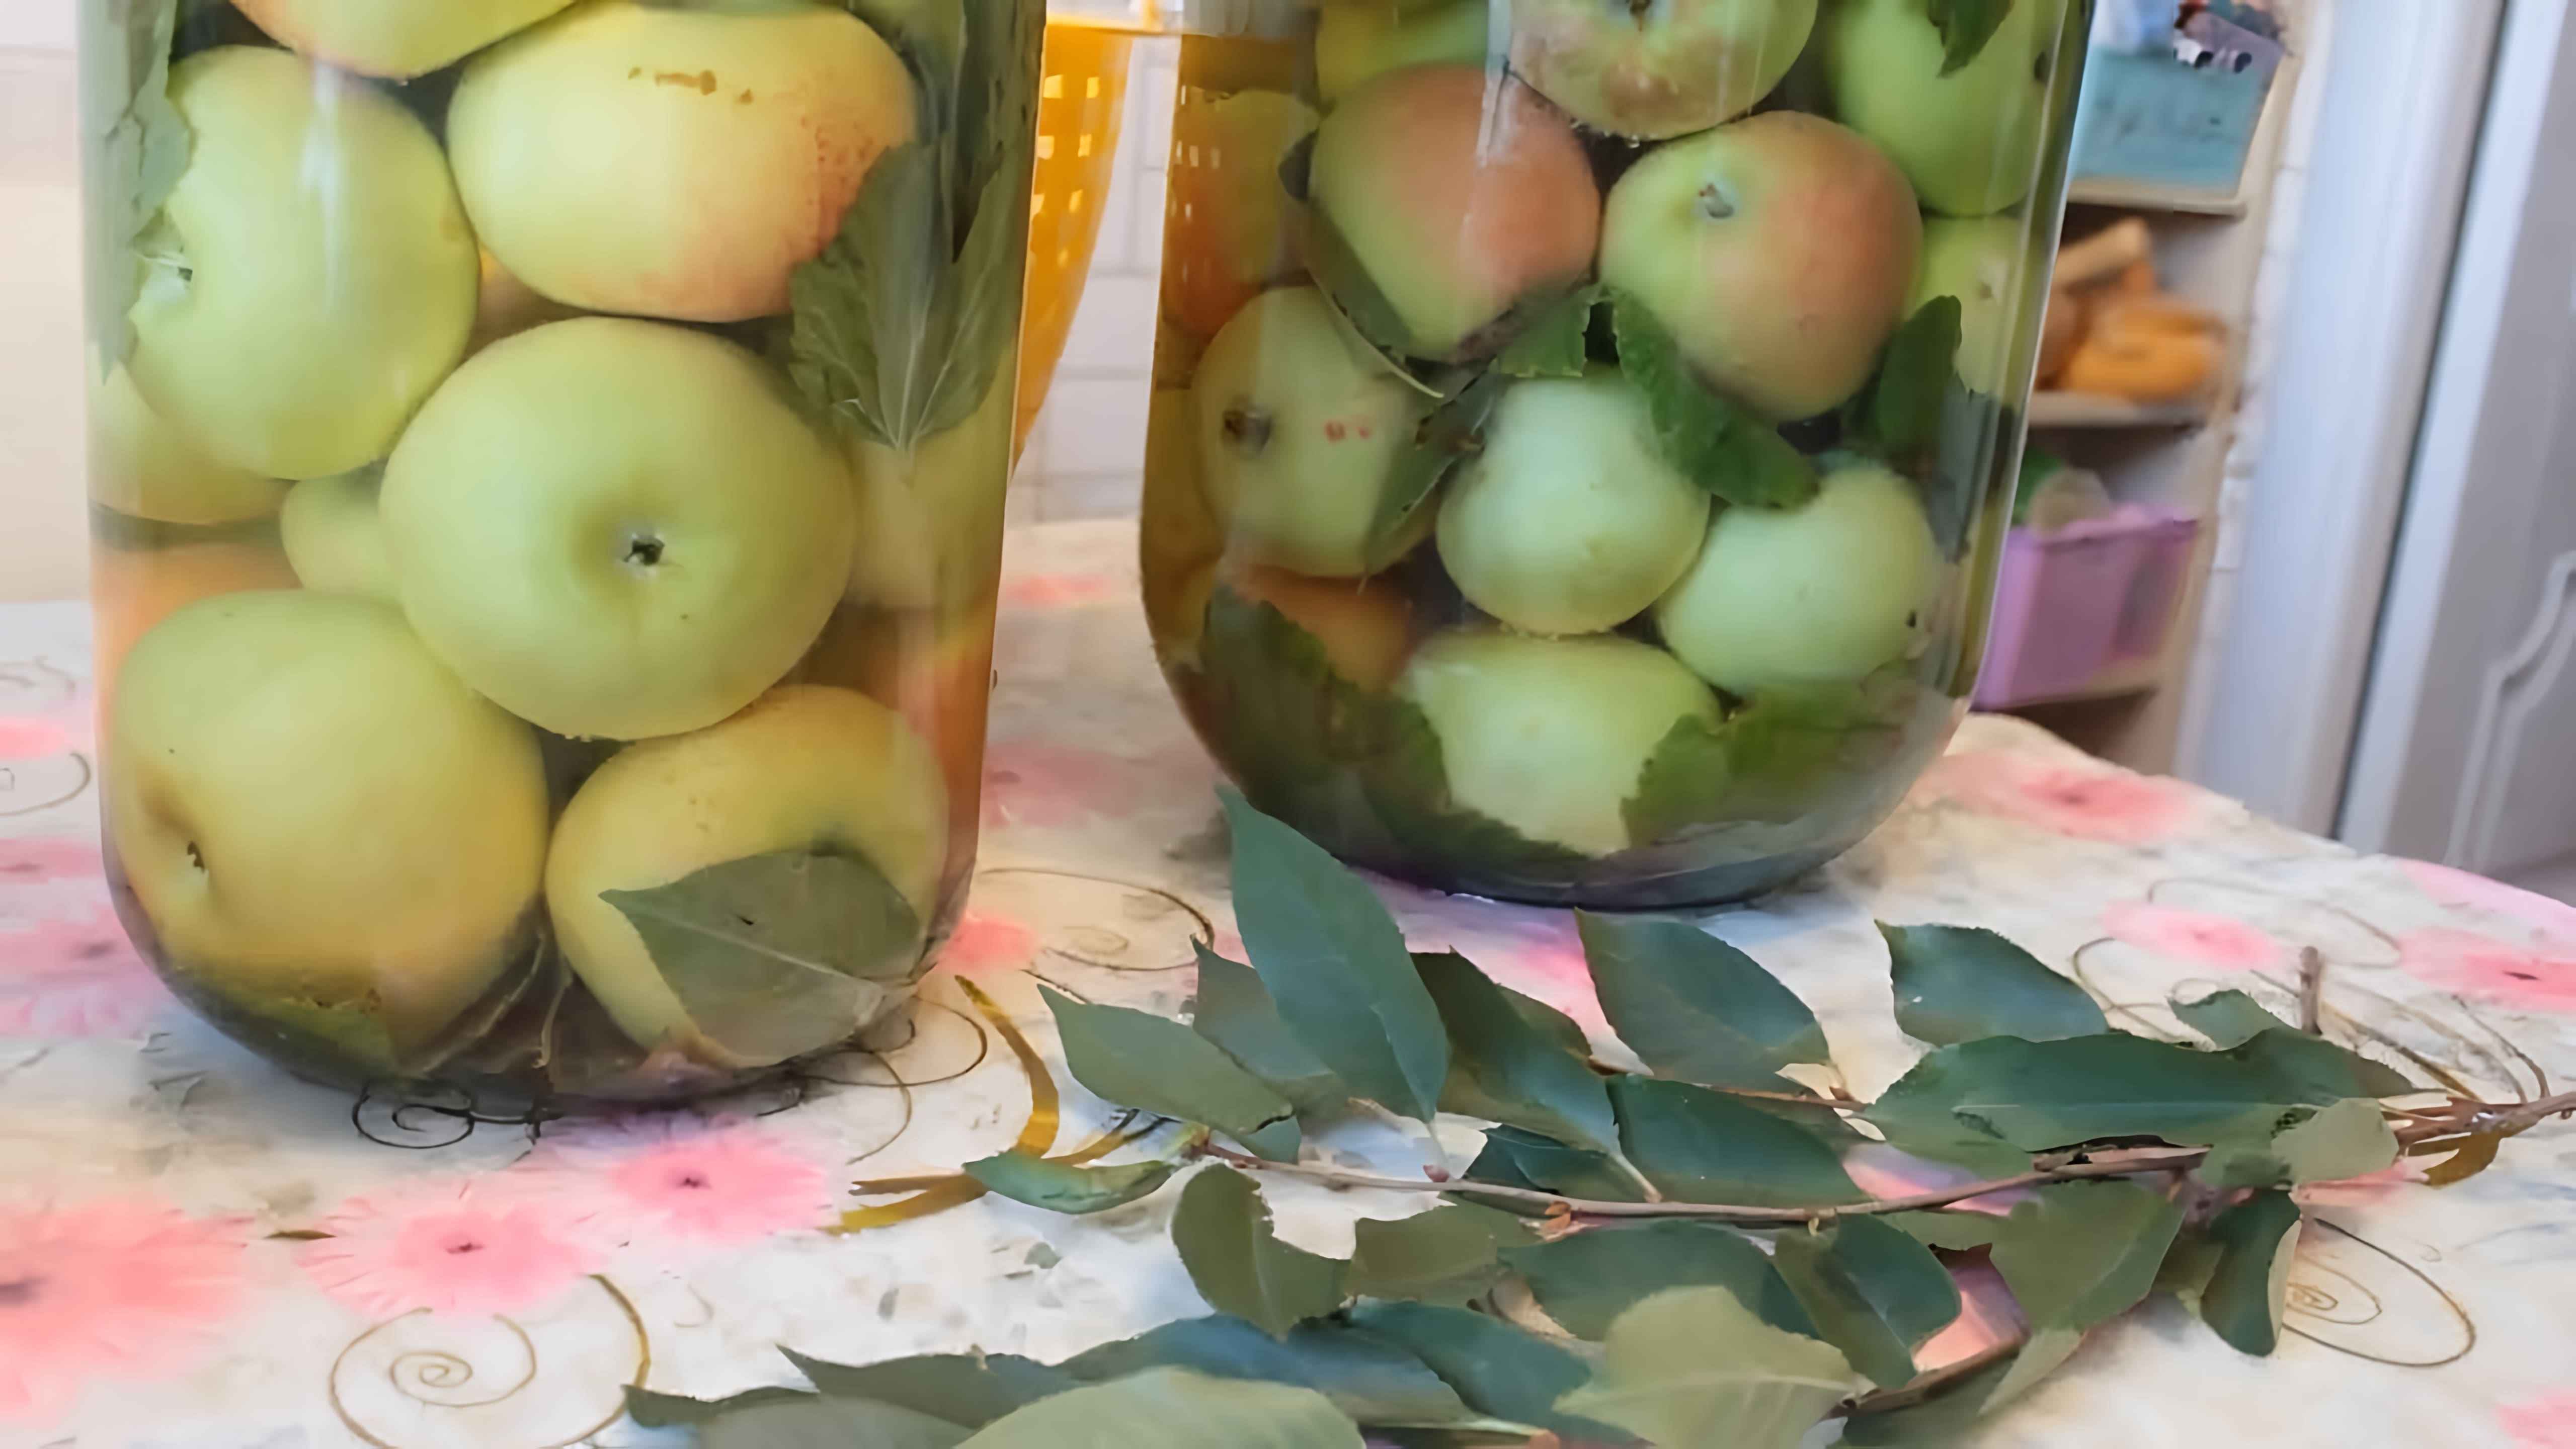 ЯБЛОКИ МОЧЕНЫЕ В БАНКАХ! 🍏Самый простой и Вкусный рецепт моченых яблок!👌 Заготовки на зиму!

В этом видео-ролике будет показан простой и вкусный рецепт моченых яблок, который можно использовать для заготовок на зиму